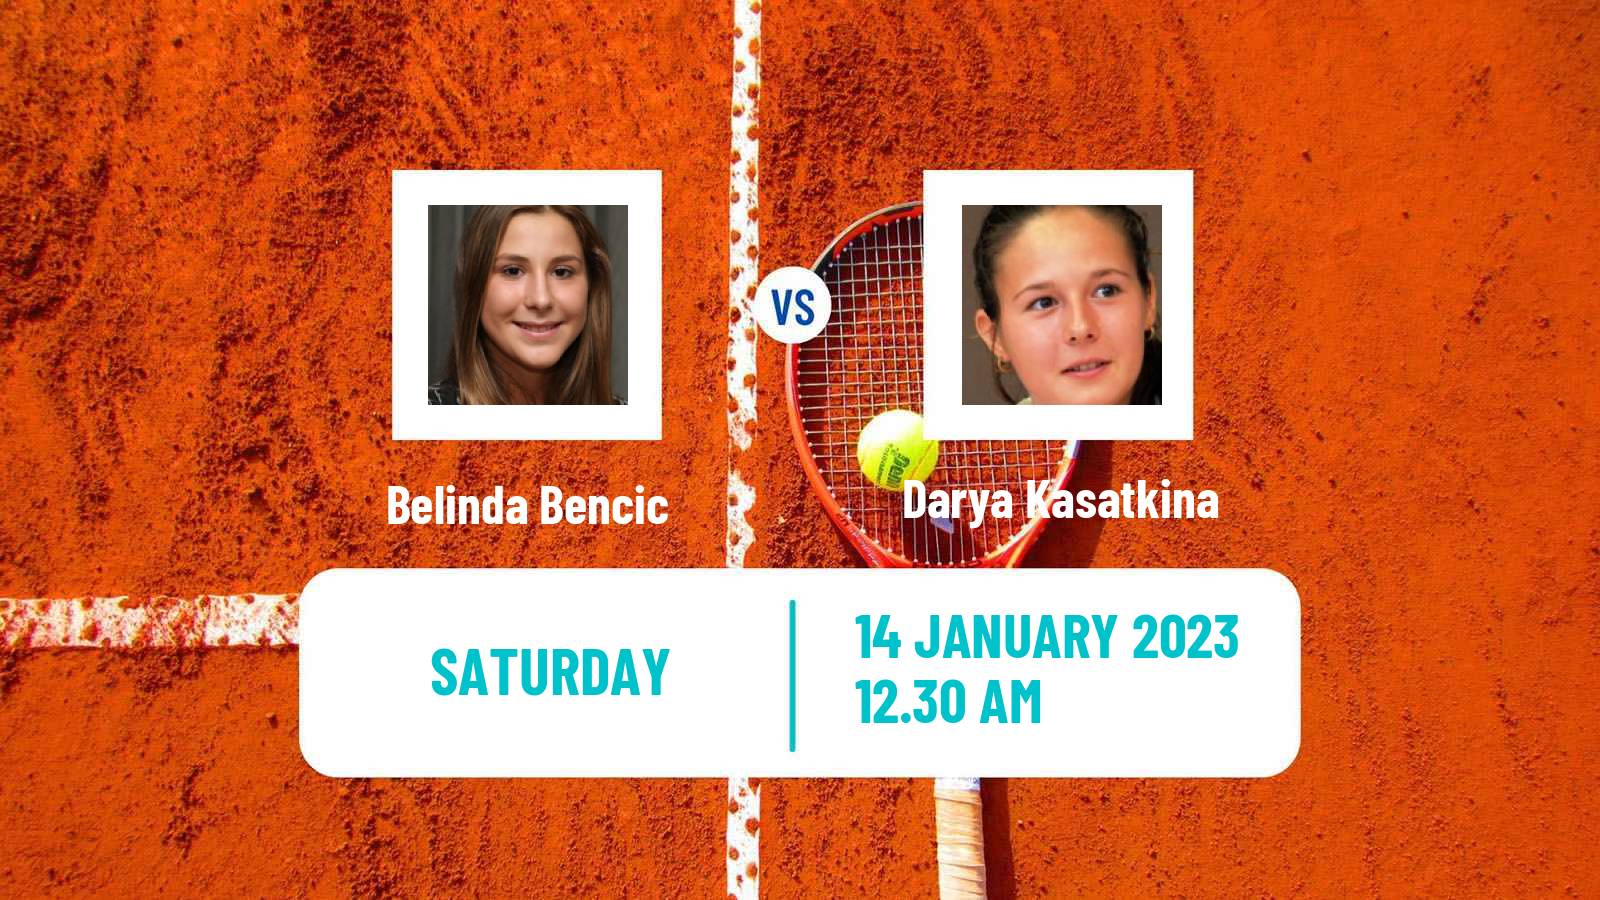 Tennis WTA Adelaide 2 Belinda Bencic - Darya Kasatkina